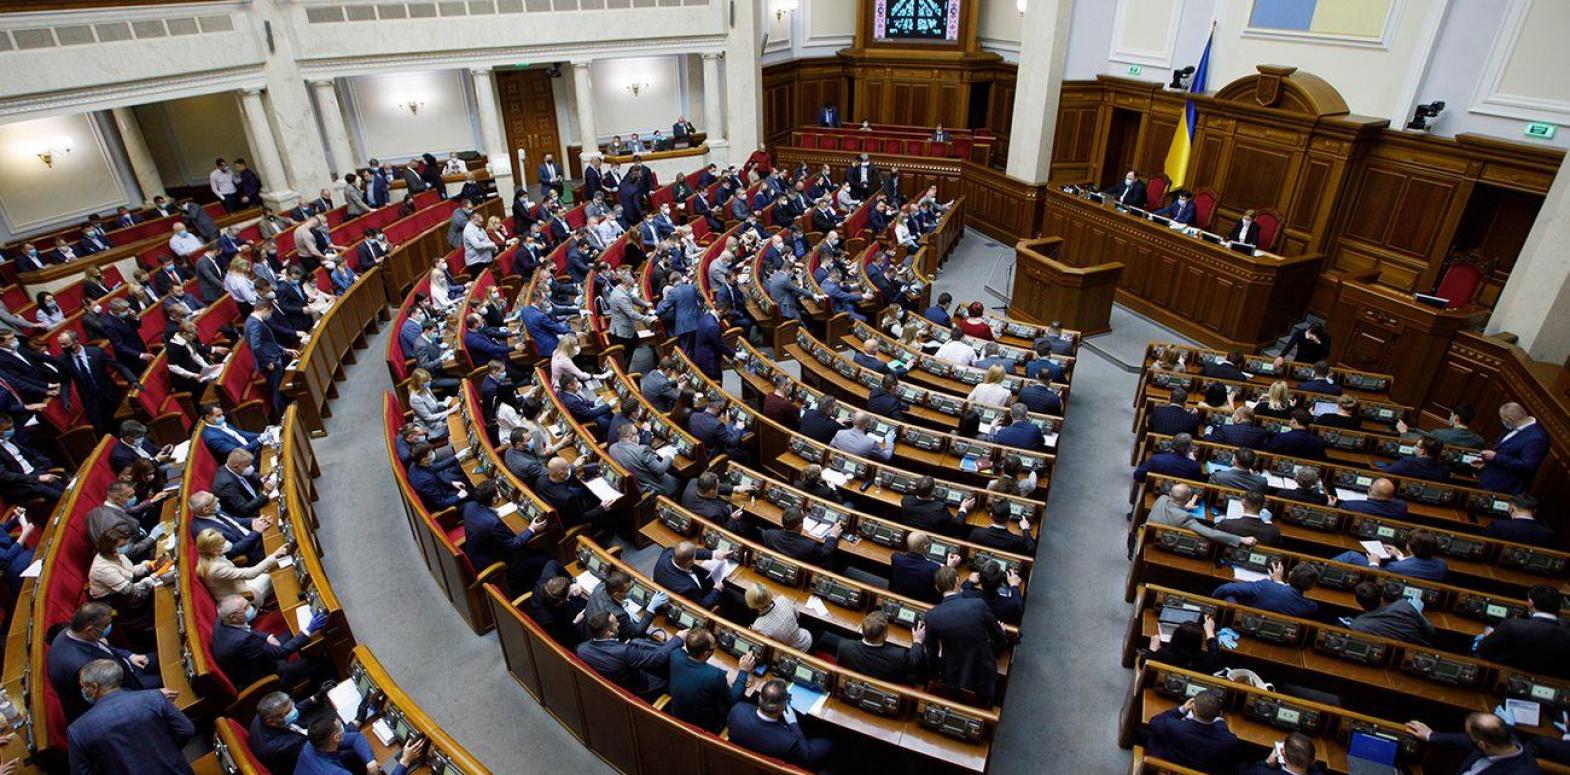 Верховная Рада одобрила закон о выплате ФОПам по 8 тыс. гривен